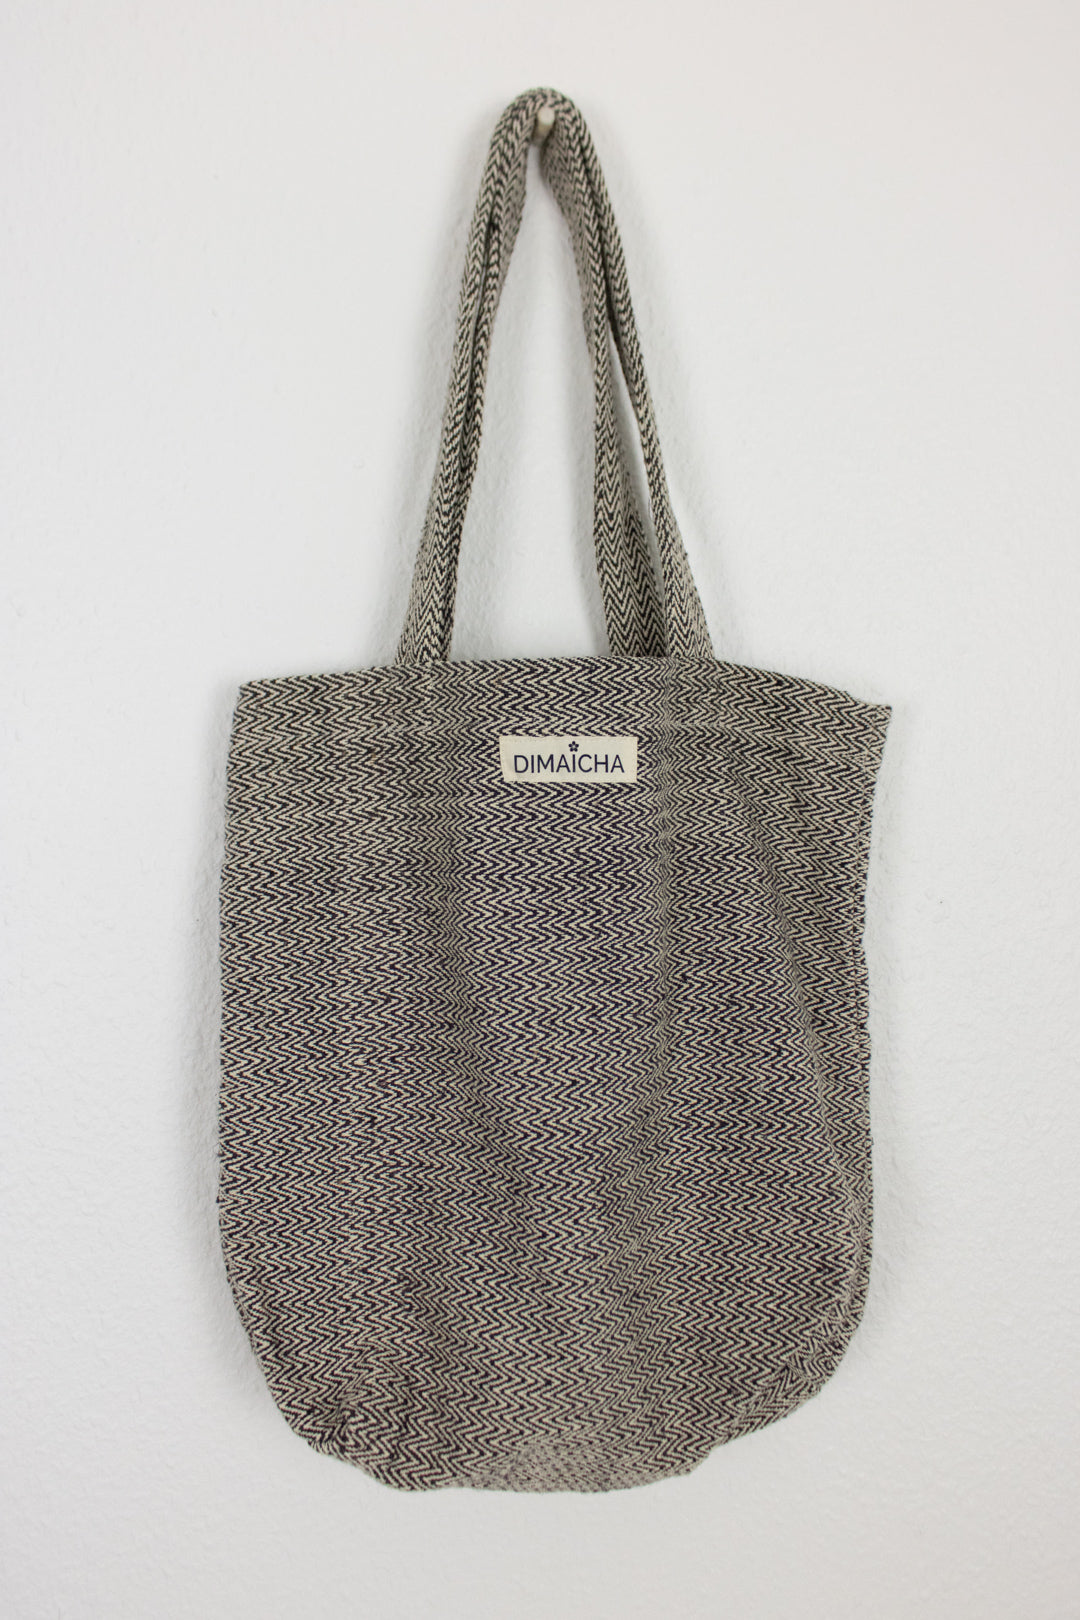 DIMAICHA Handwoven Nettle (Allo) Tote Bag